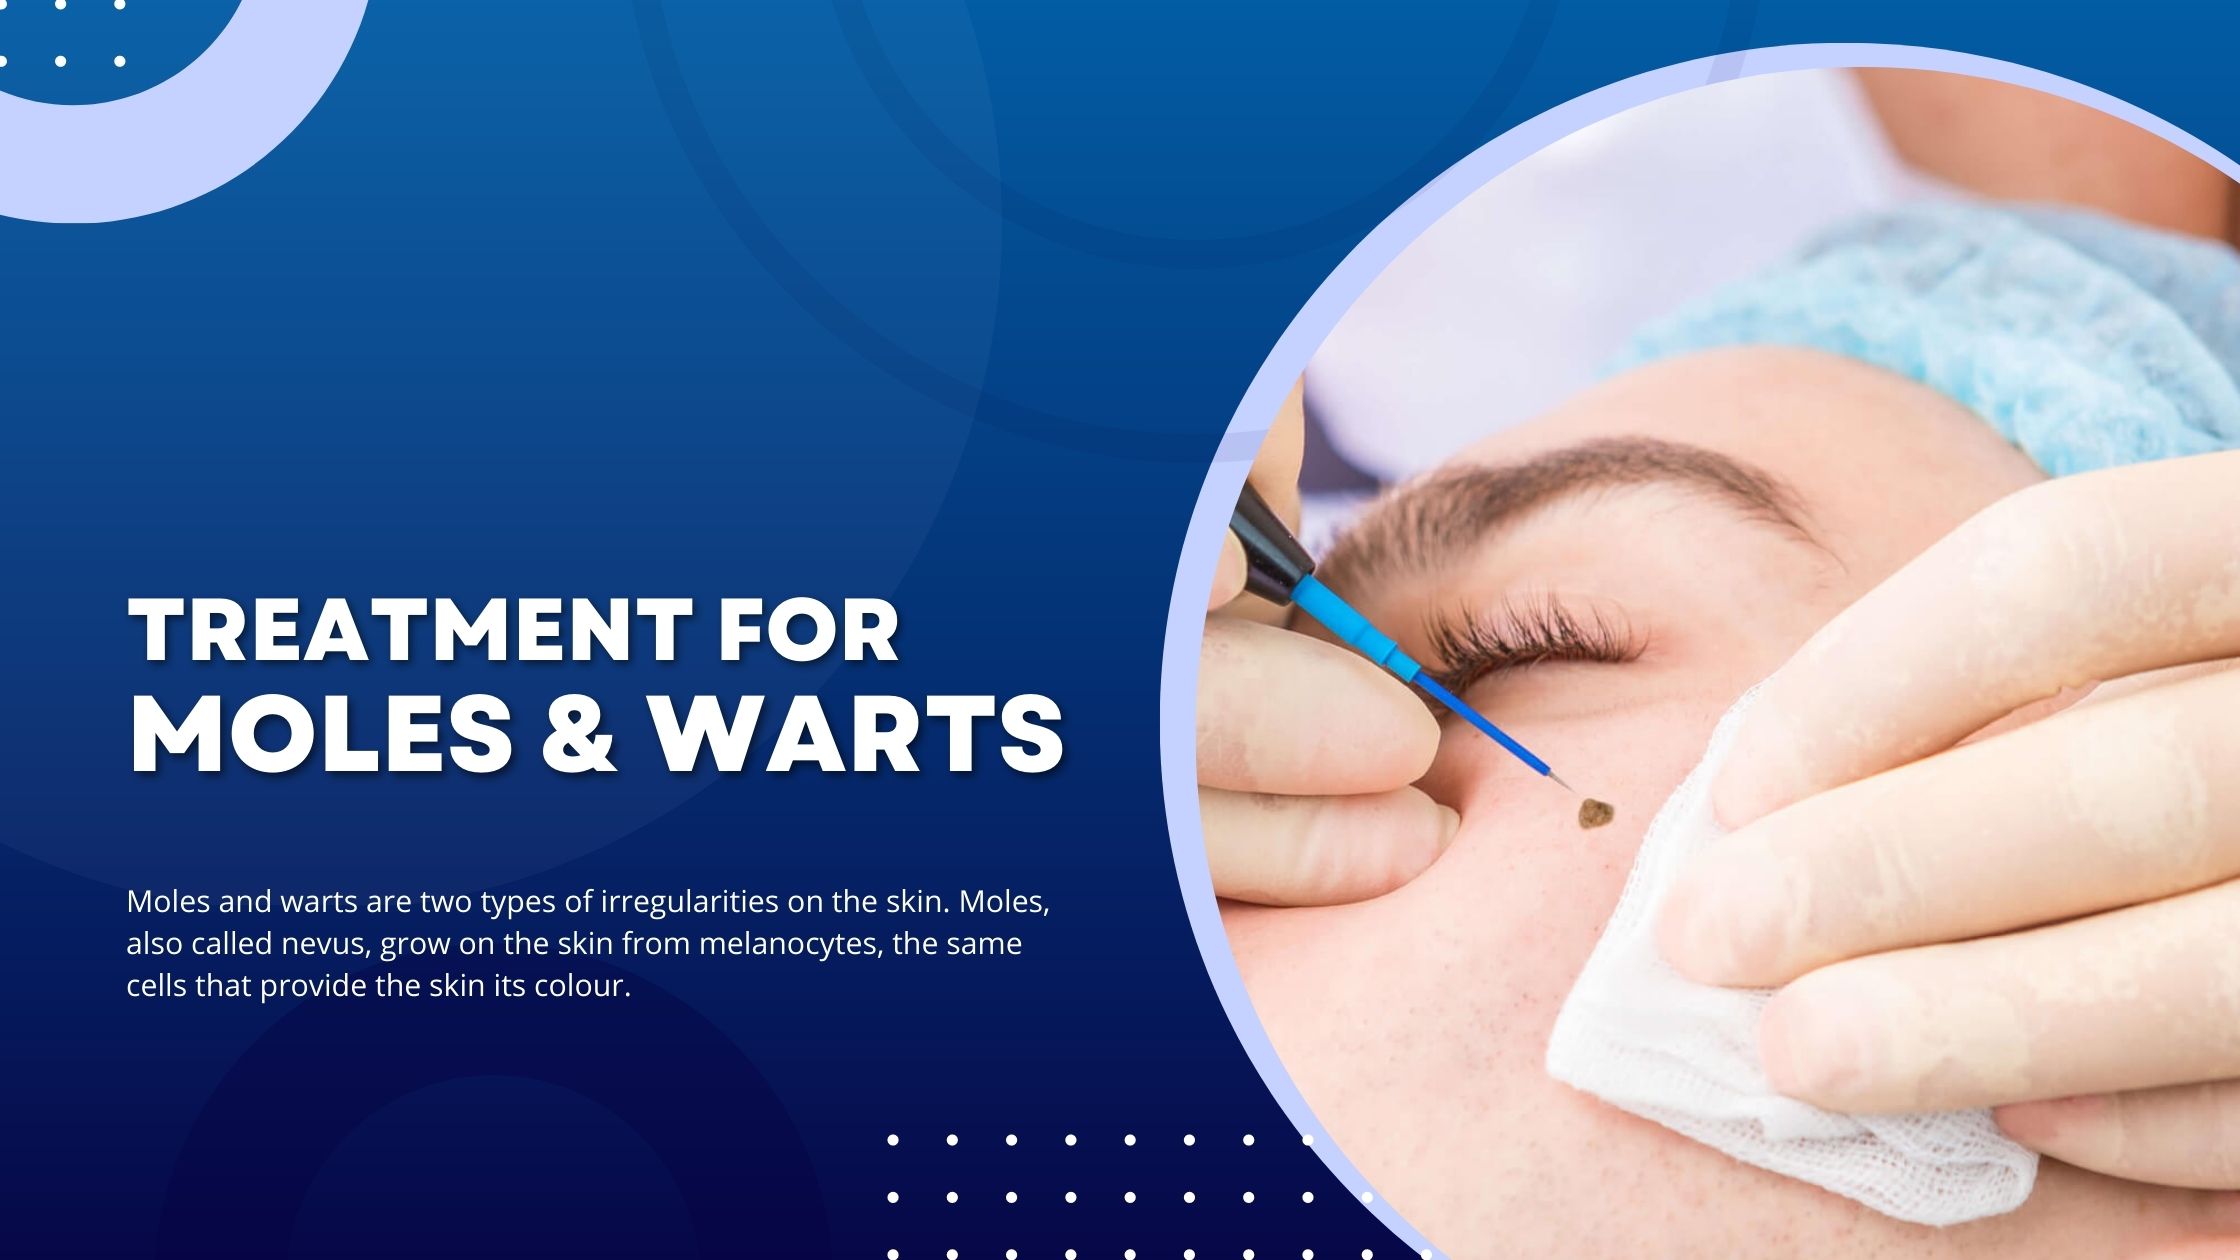 Warts & Moles Treatment